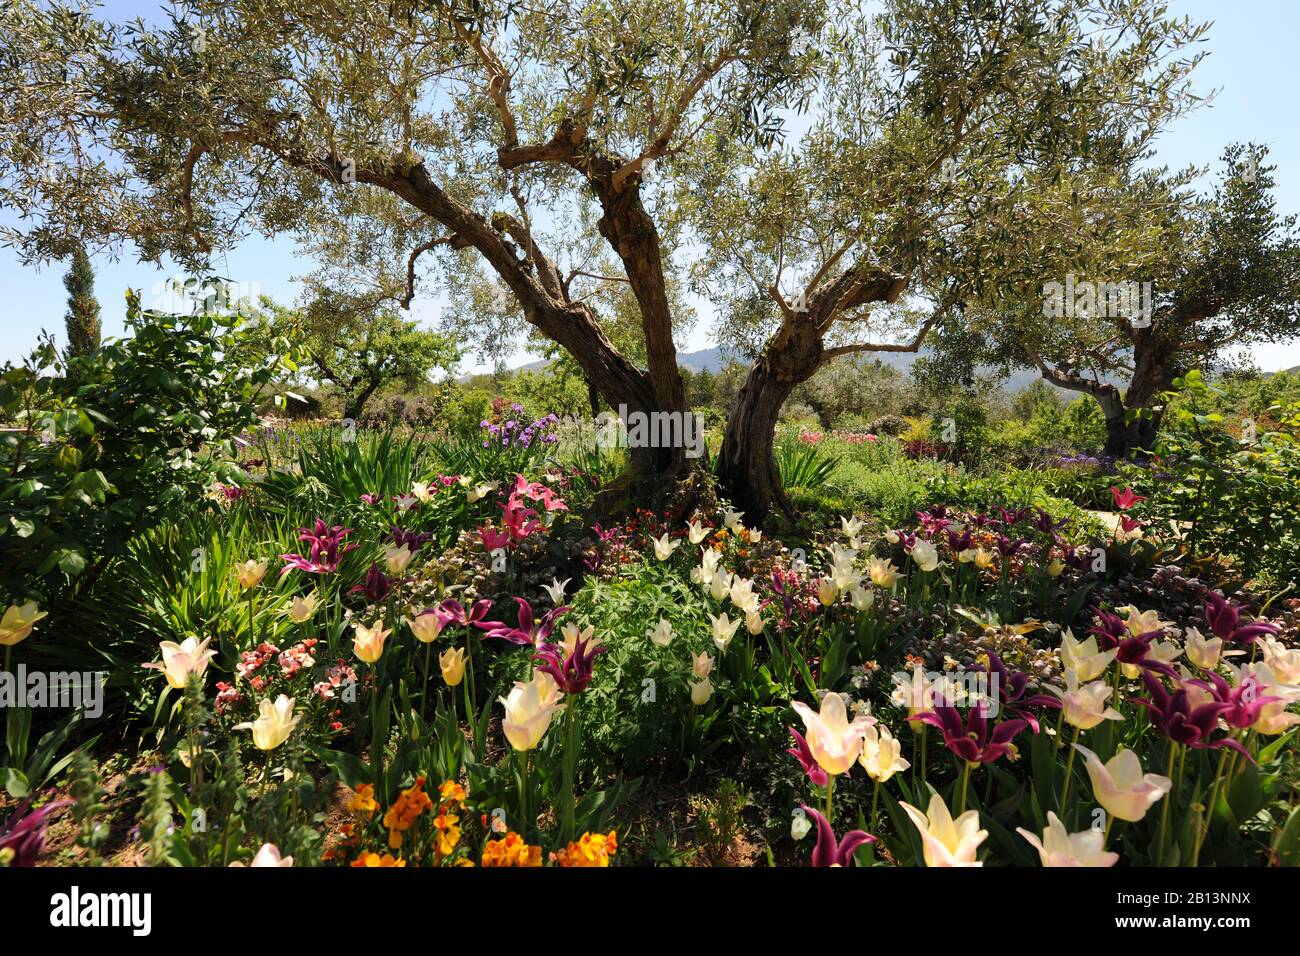 Flowers, Plants, & Mediterranean Olive Trees at Vanderpump